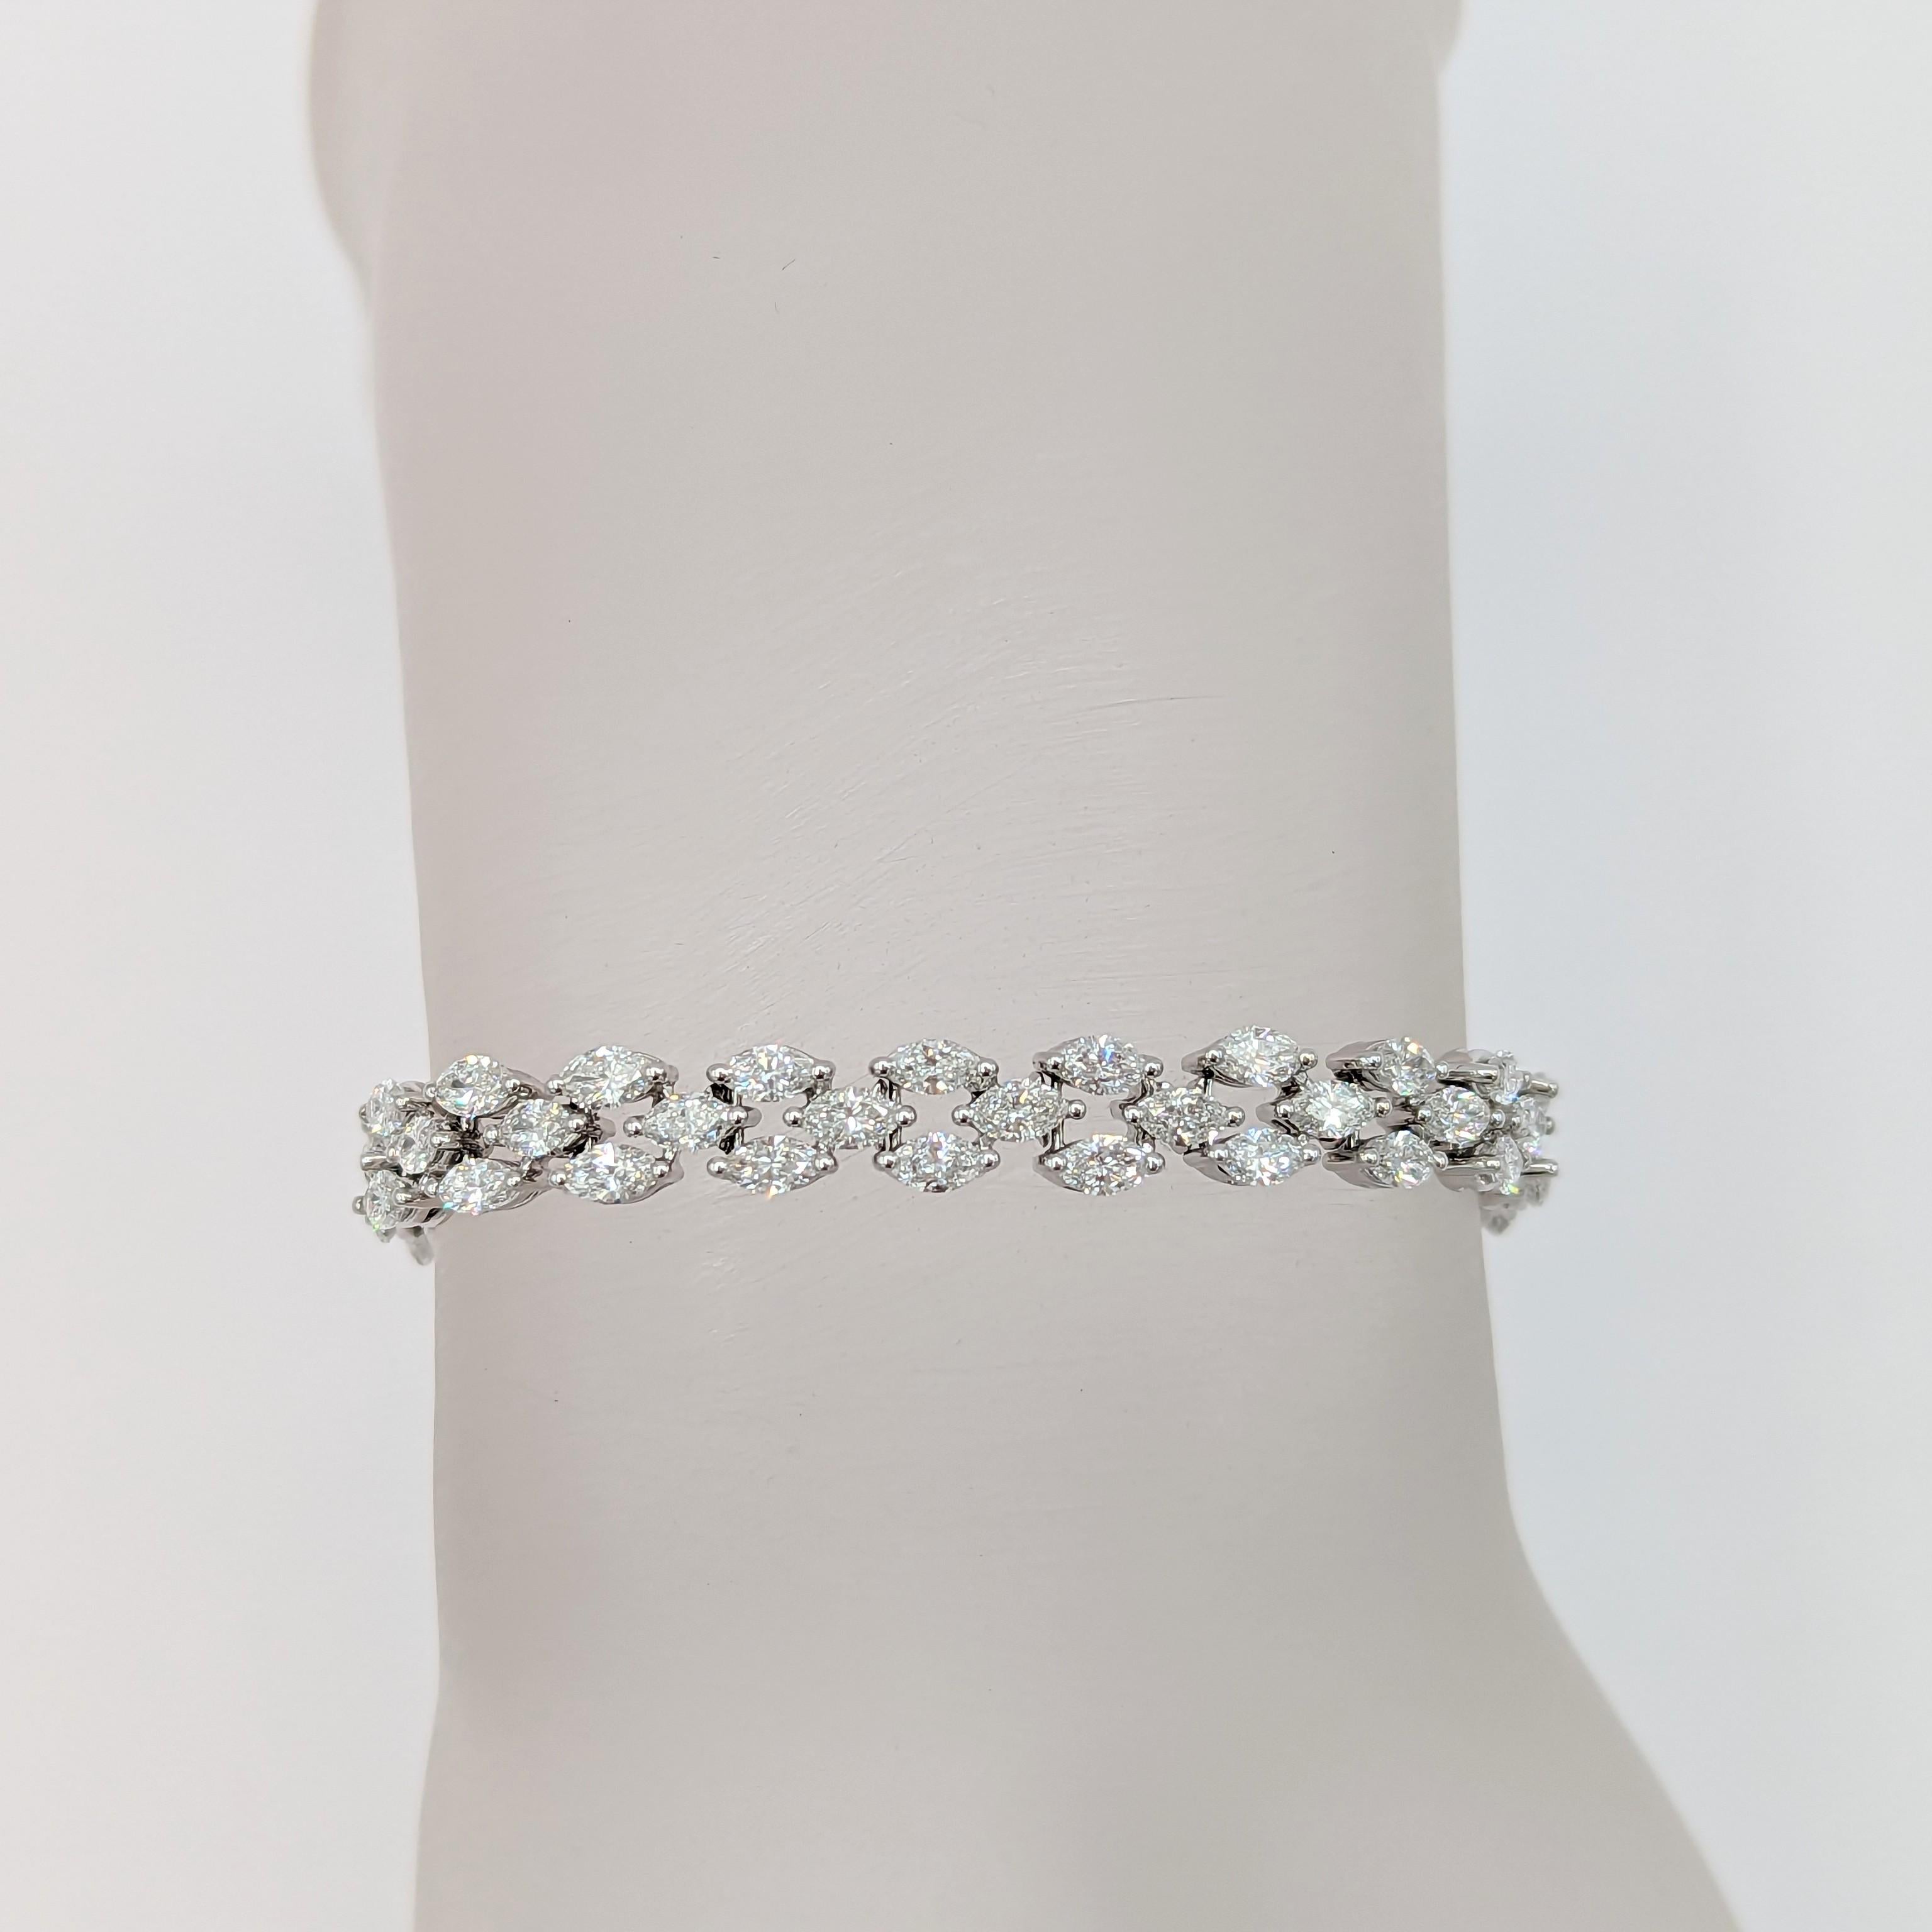 Magnifiques pierres marquises en diamant blanc de 7,60 ct. faites à la main en or blanc 14k.  Ce bracelet est simple mais tellement classe et différent du bracelet de tennis à diamants ronds habituel.  La longueur est de 7